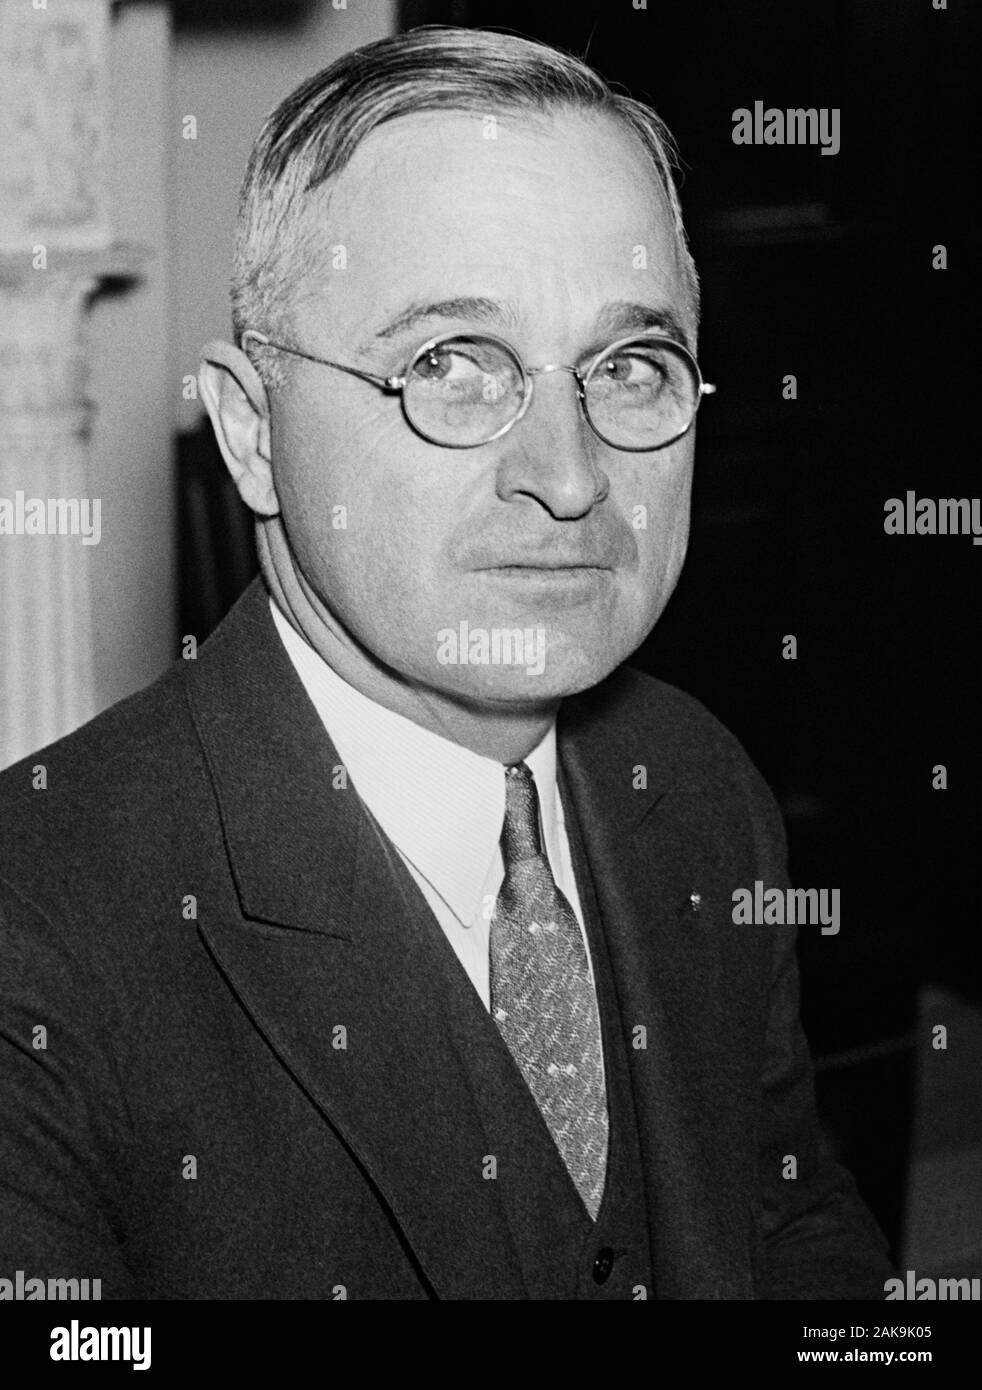 Vintage photo portrait du Missouri - Le sénateur et futur président - Harry S Truman. Circa 1935 Photo par Harris et Ewing. Truman (1884 - 1972) allait devenir le 33e président des États-Unis (1945 - 1953). Banque D'Images